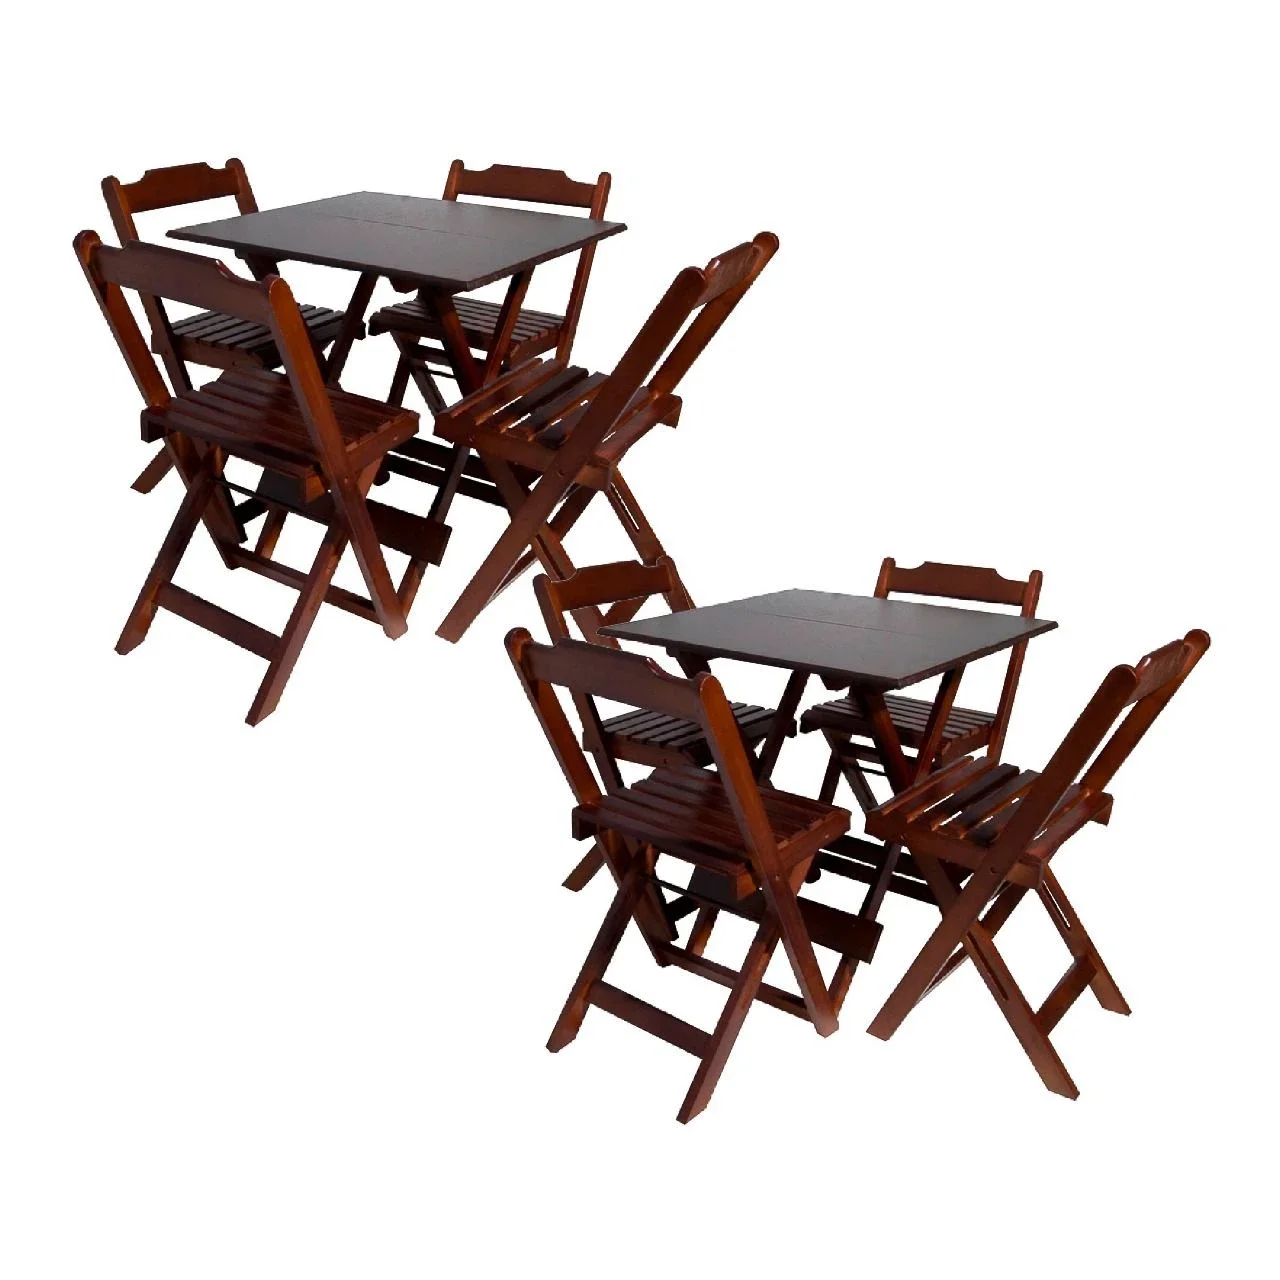 Kit com 2 Conjuntos de Jogo de Mesa 70x70 com 4 Cadeiras Dobráveis - Dg Móveis:imbuia - 1